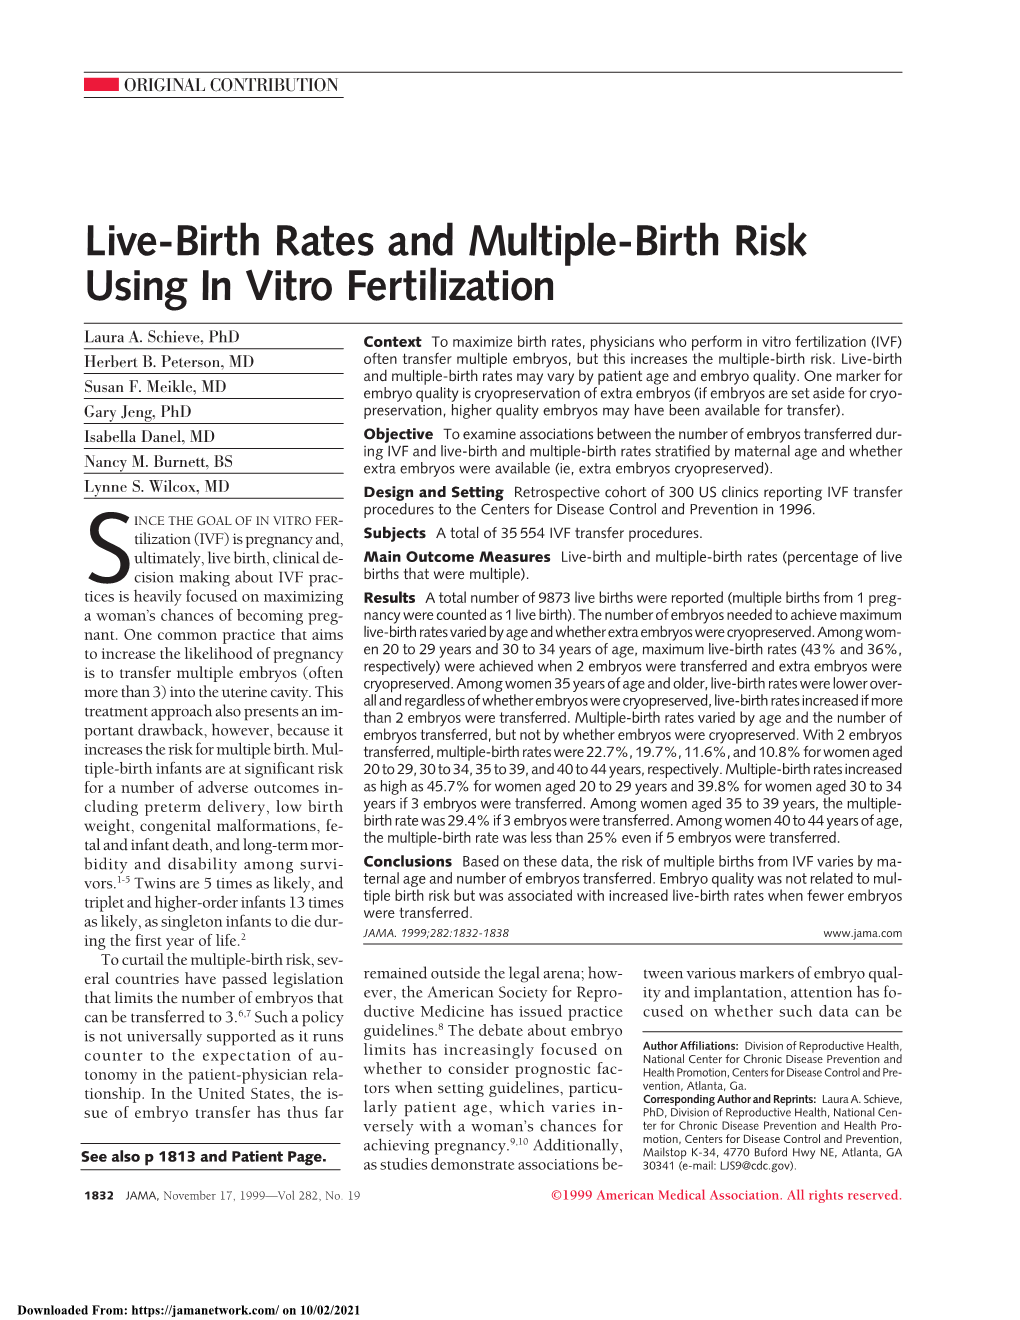 Live-Birth Rates and Multiple-Birth Risk Using in Vitro Fertilization